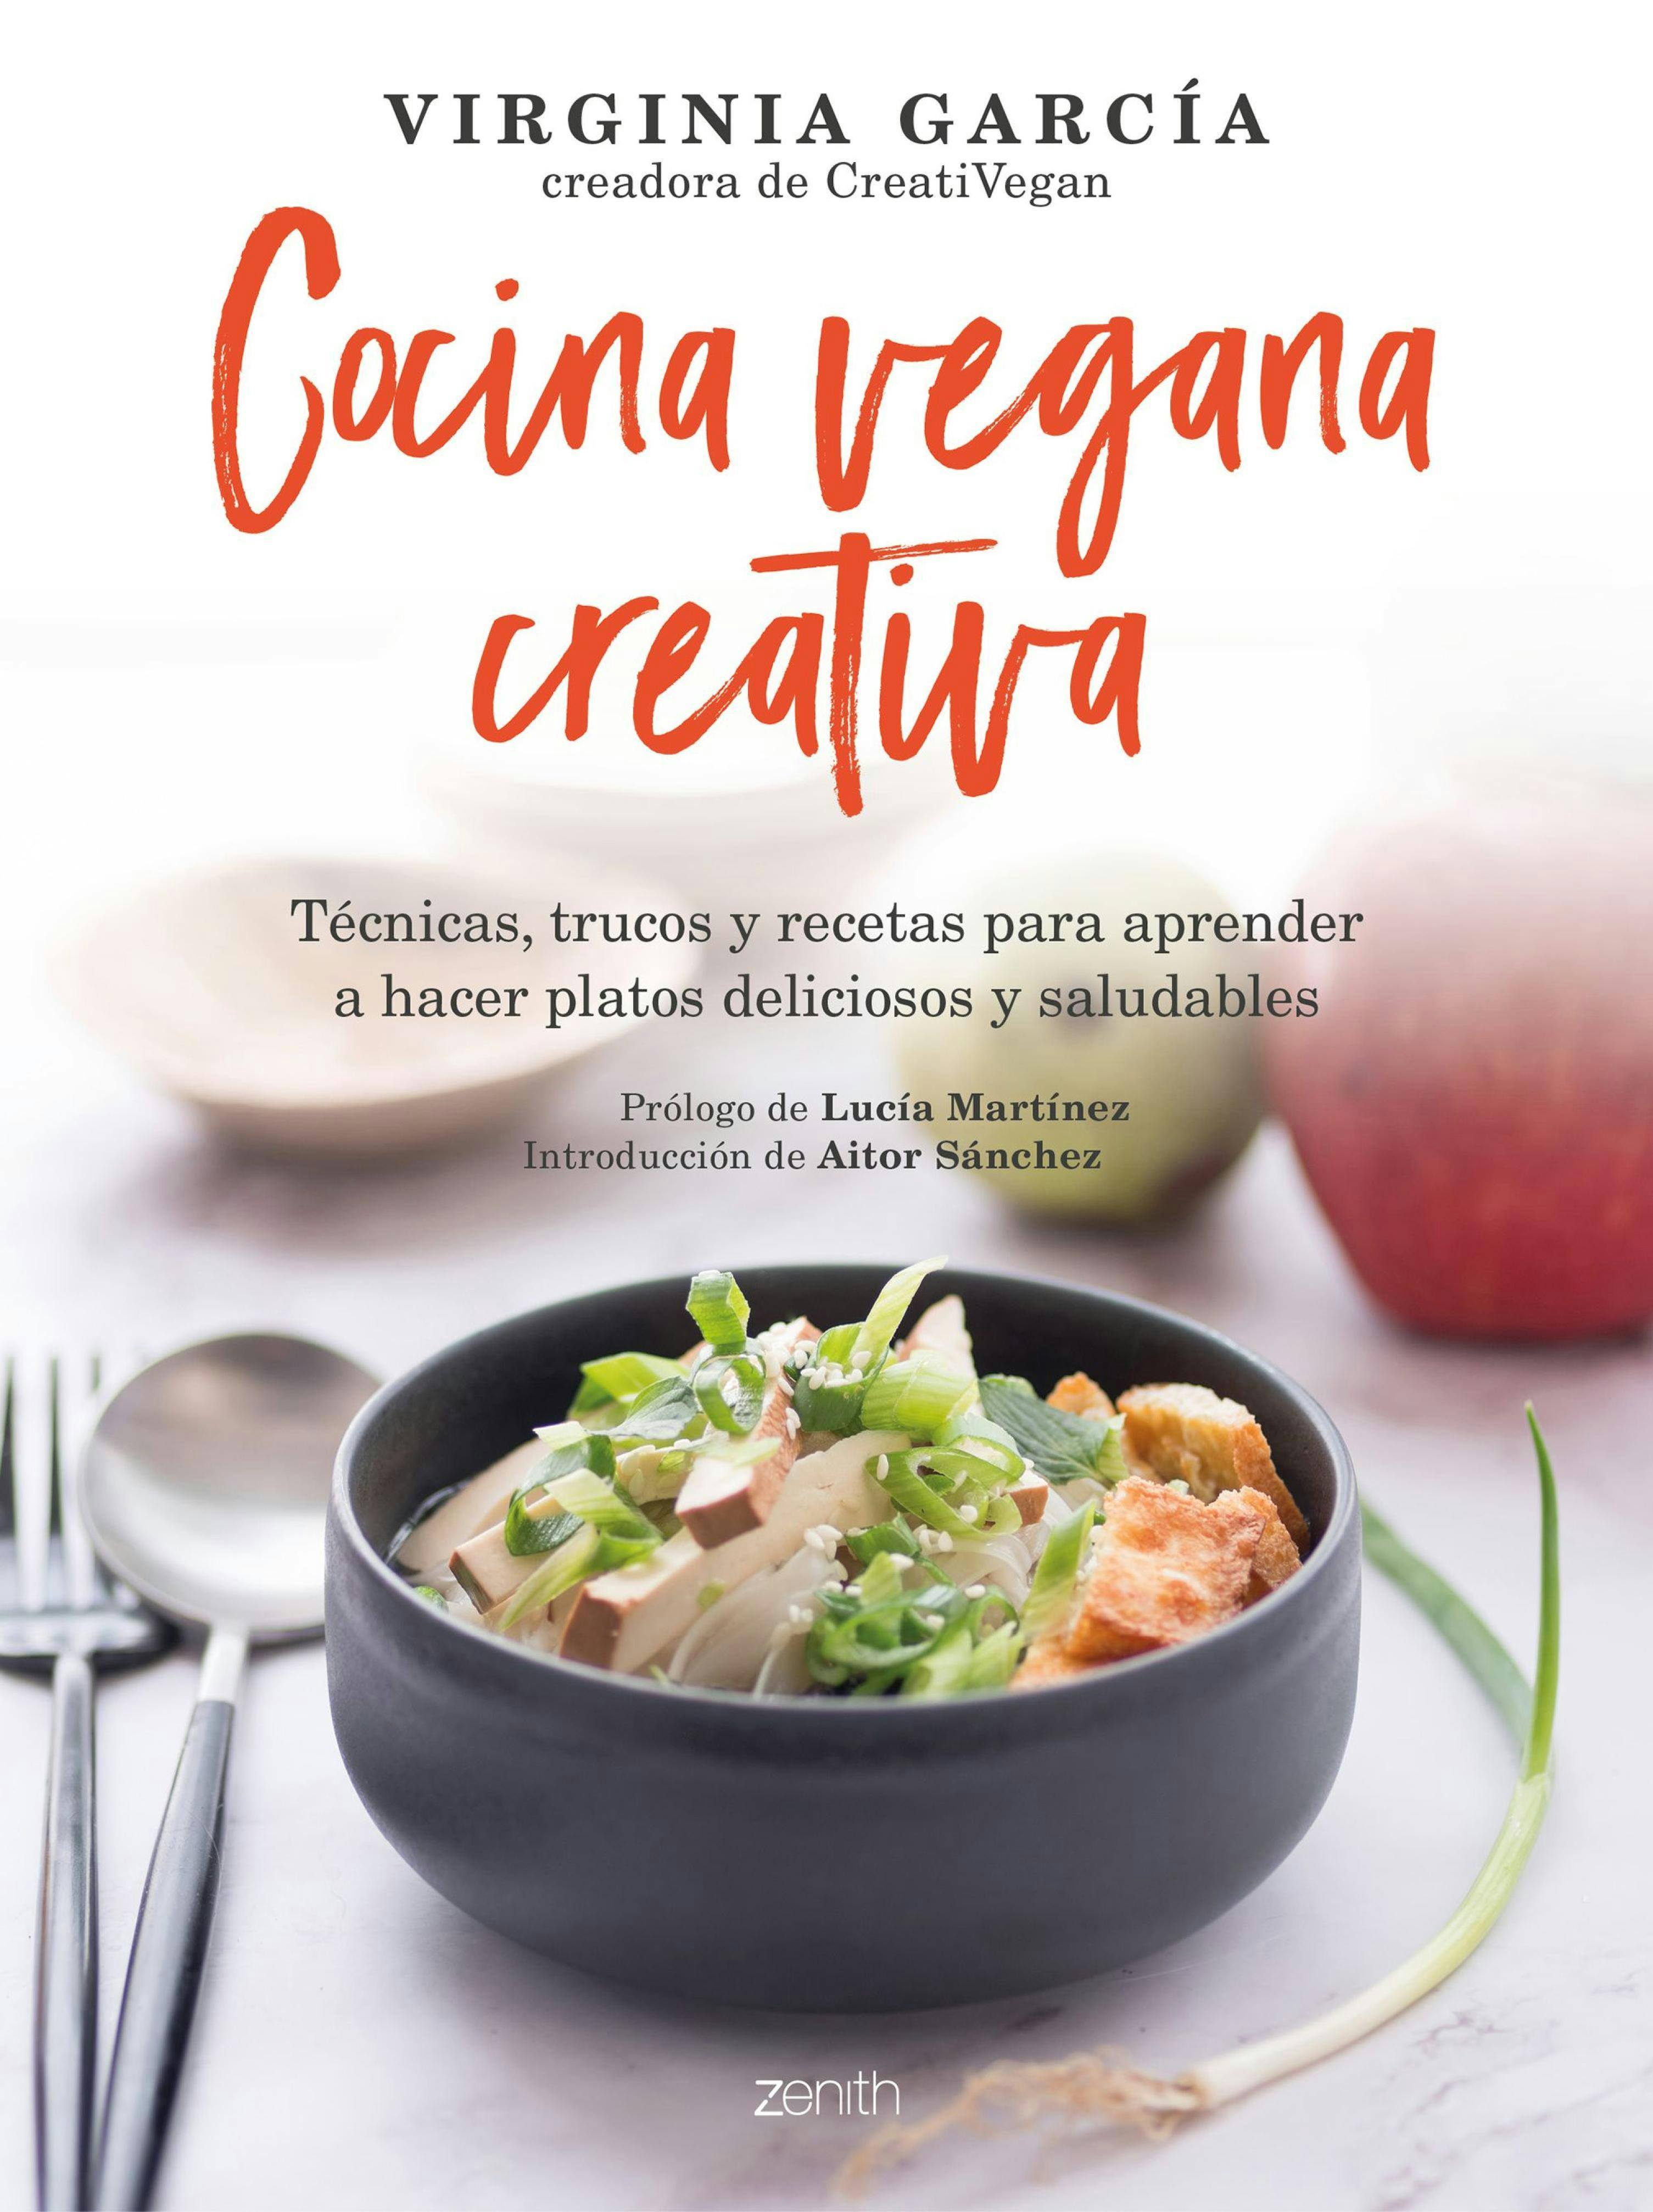 Cocina vegana creativa: Técnicas, trucos y recetas para aprender a hacer platoso deliciosos y saludables - Virginia García